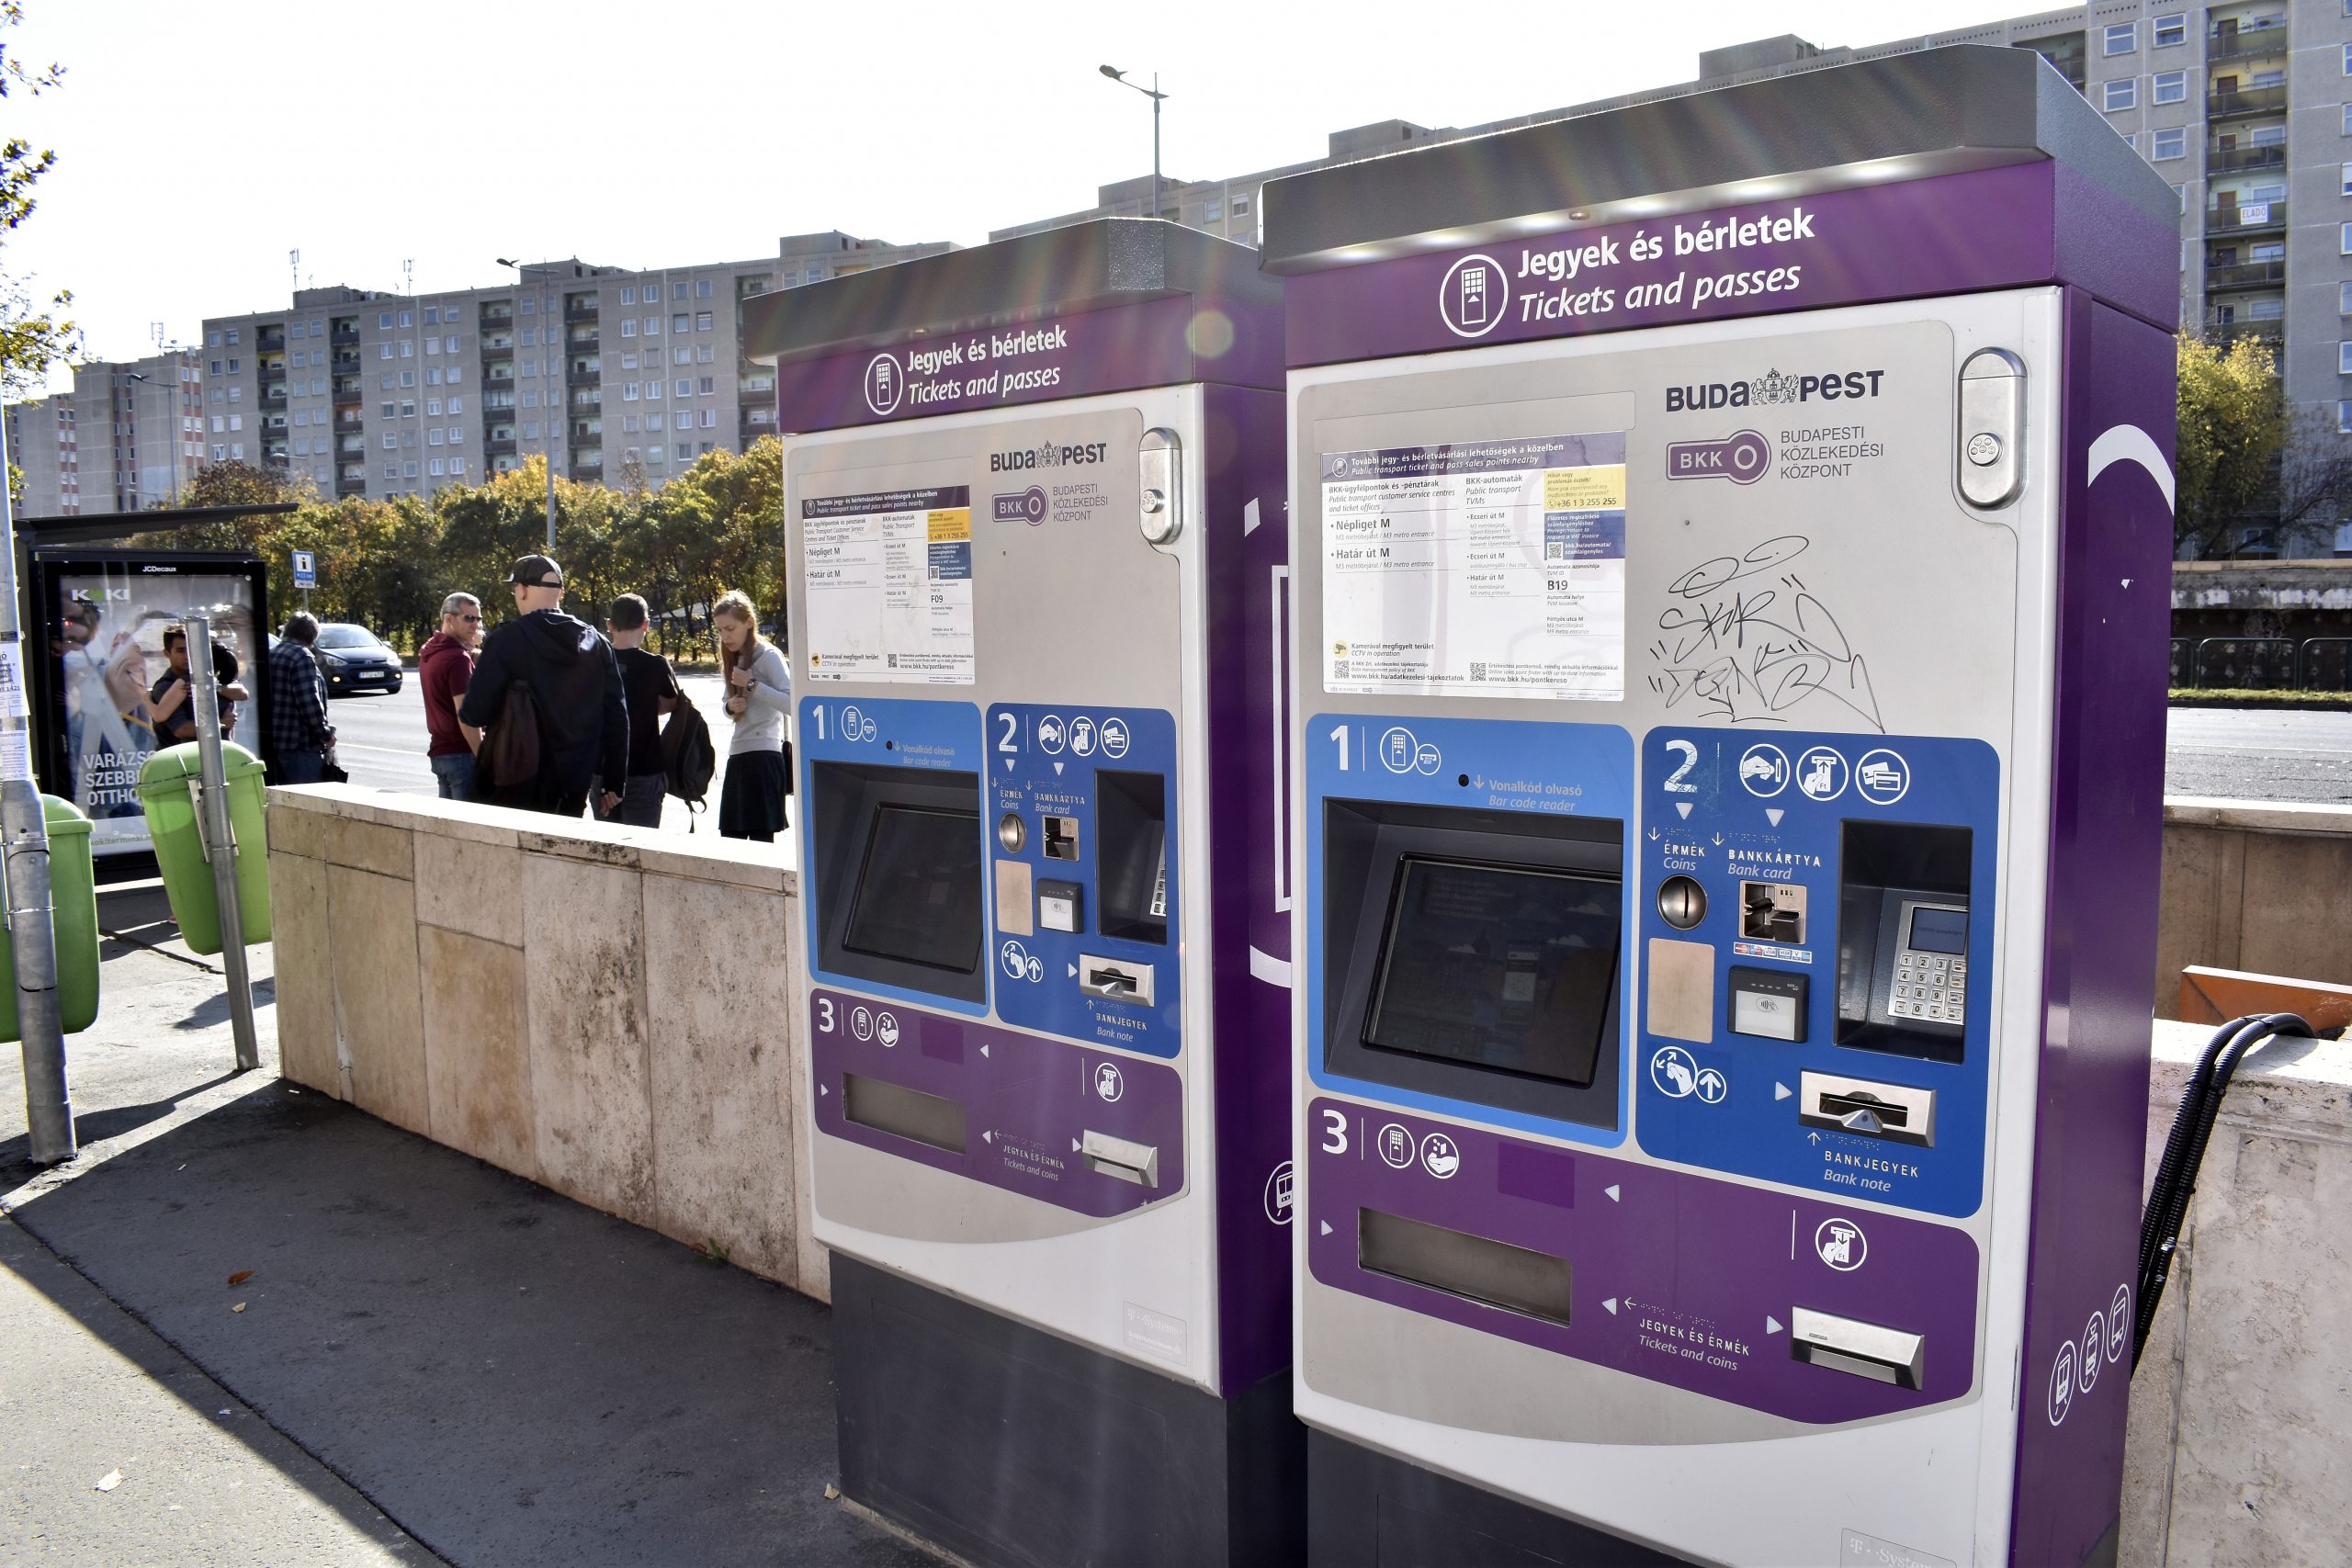 BKK-Fahrkartenautomaten können ab jetzt auch auf Englisch und Deutsch genutzt werden